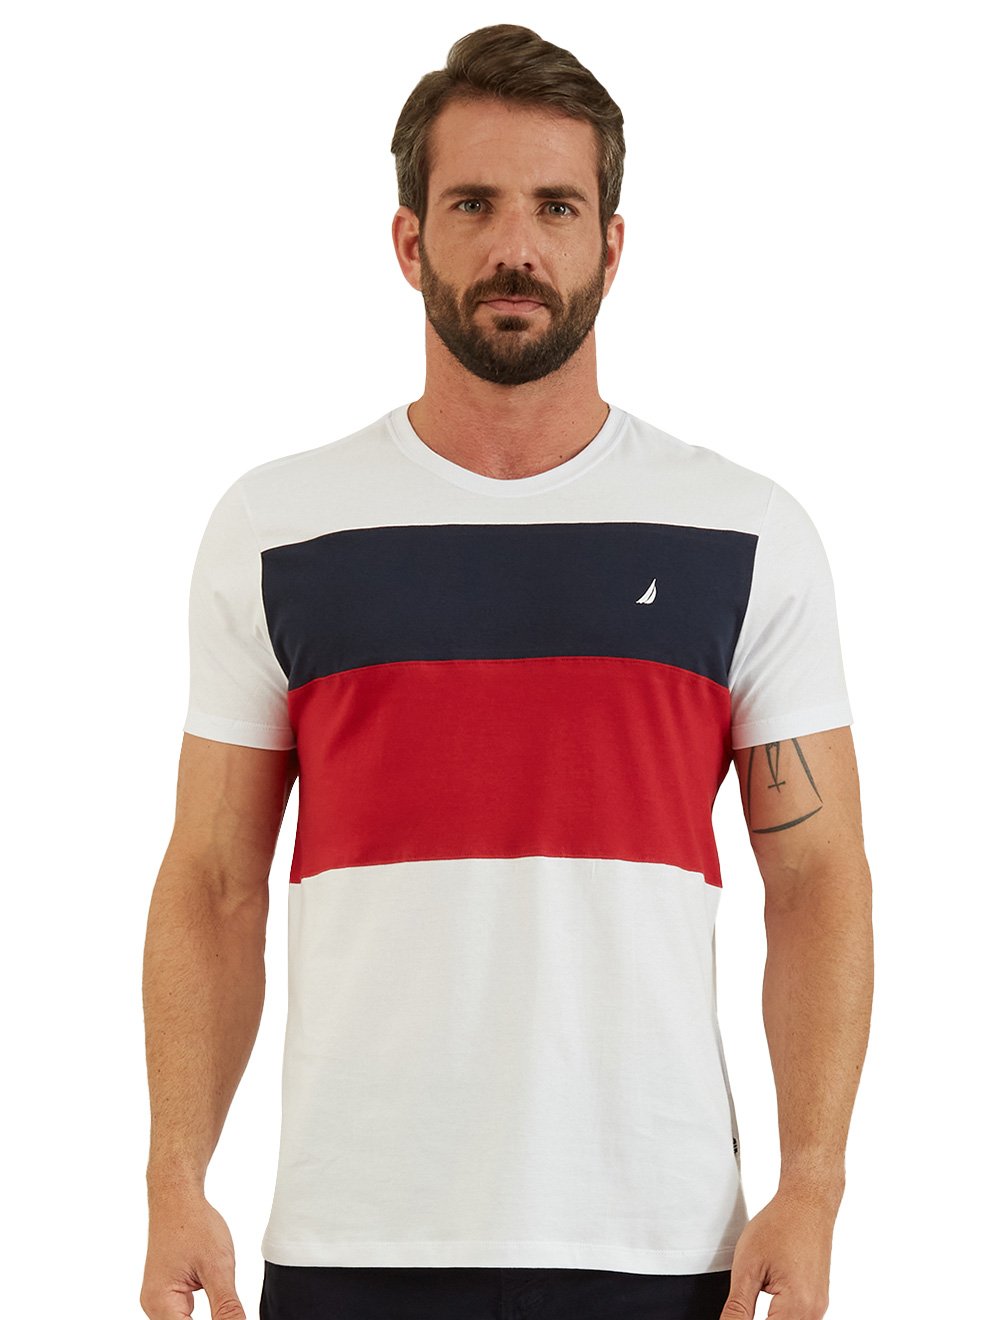 Camiseta Nautica Masculina Tricolour Branca Marinho Vermelha